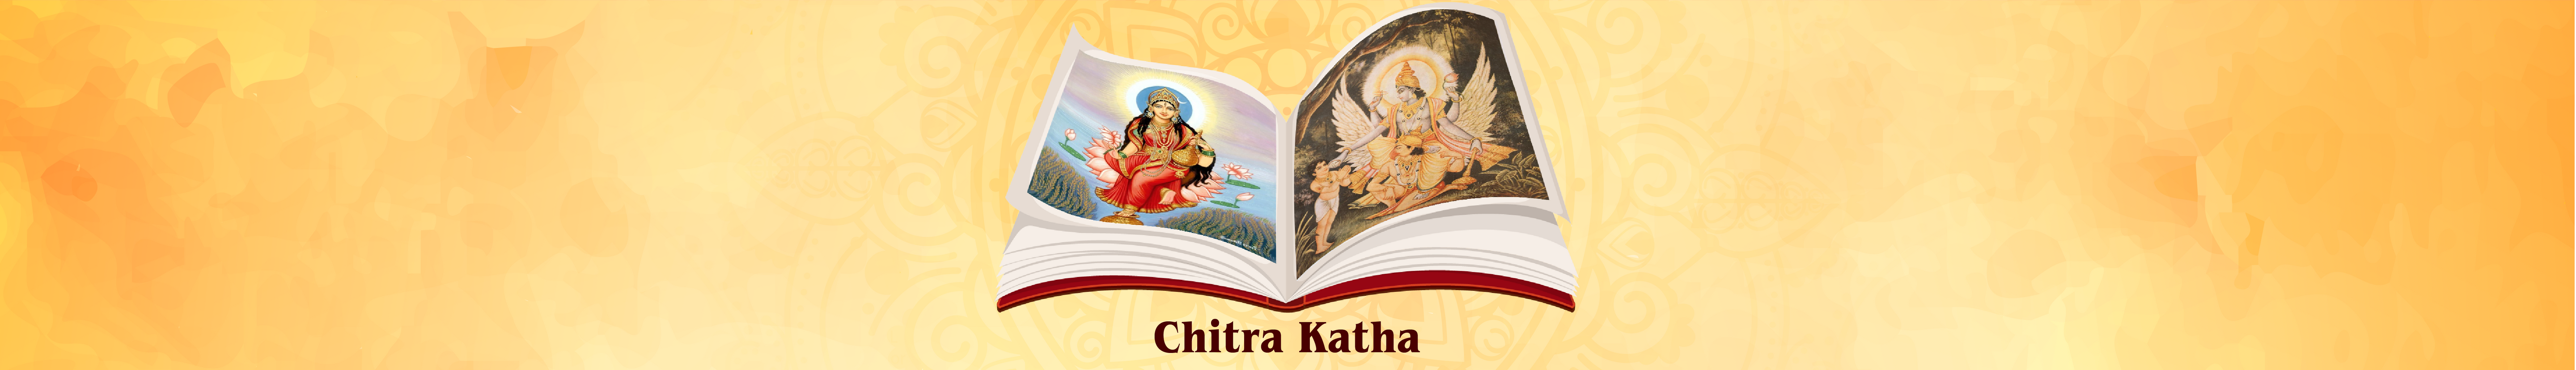 Chitra Katha